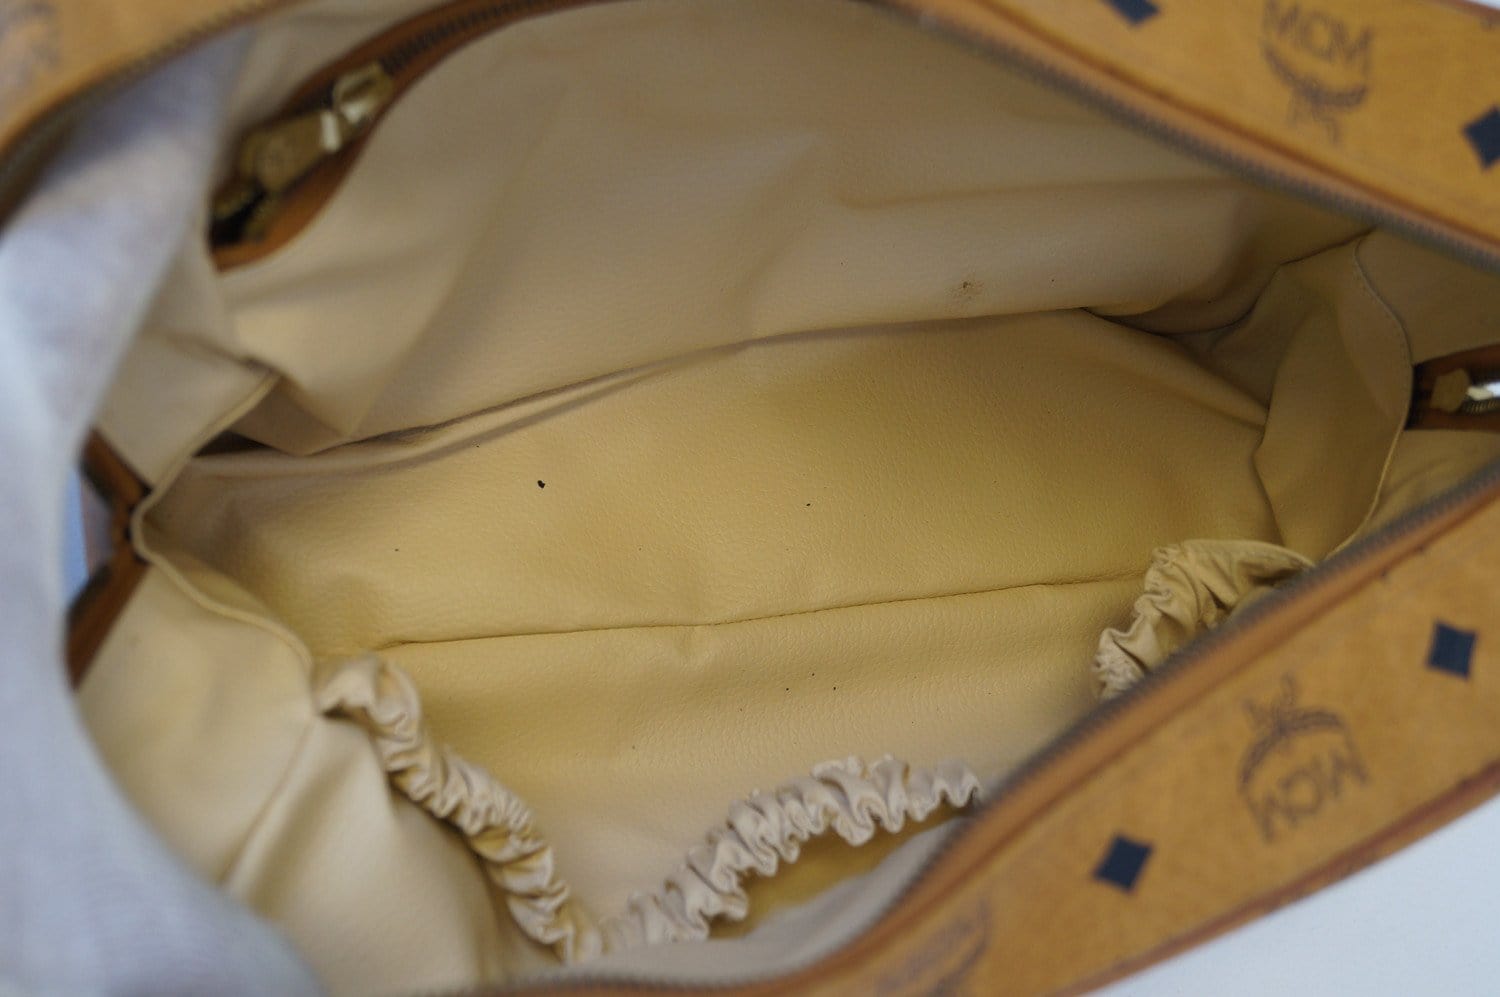 MCM Vintage Visetos Coated Canvas Tennis Bag in Brown